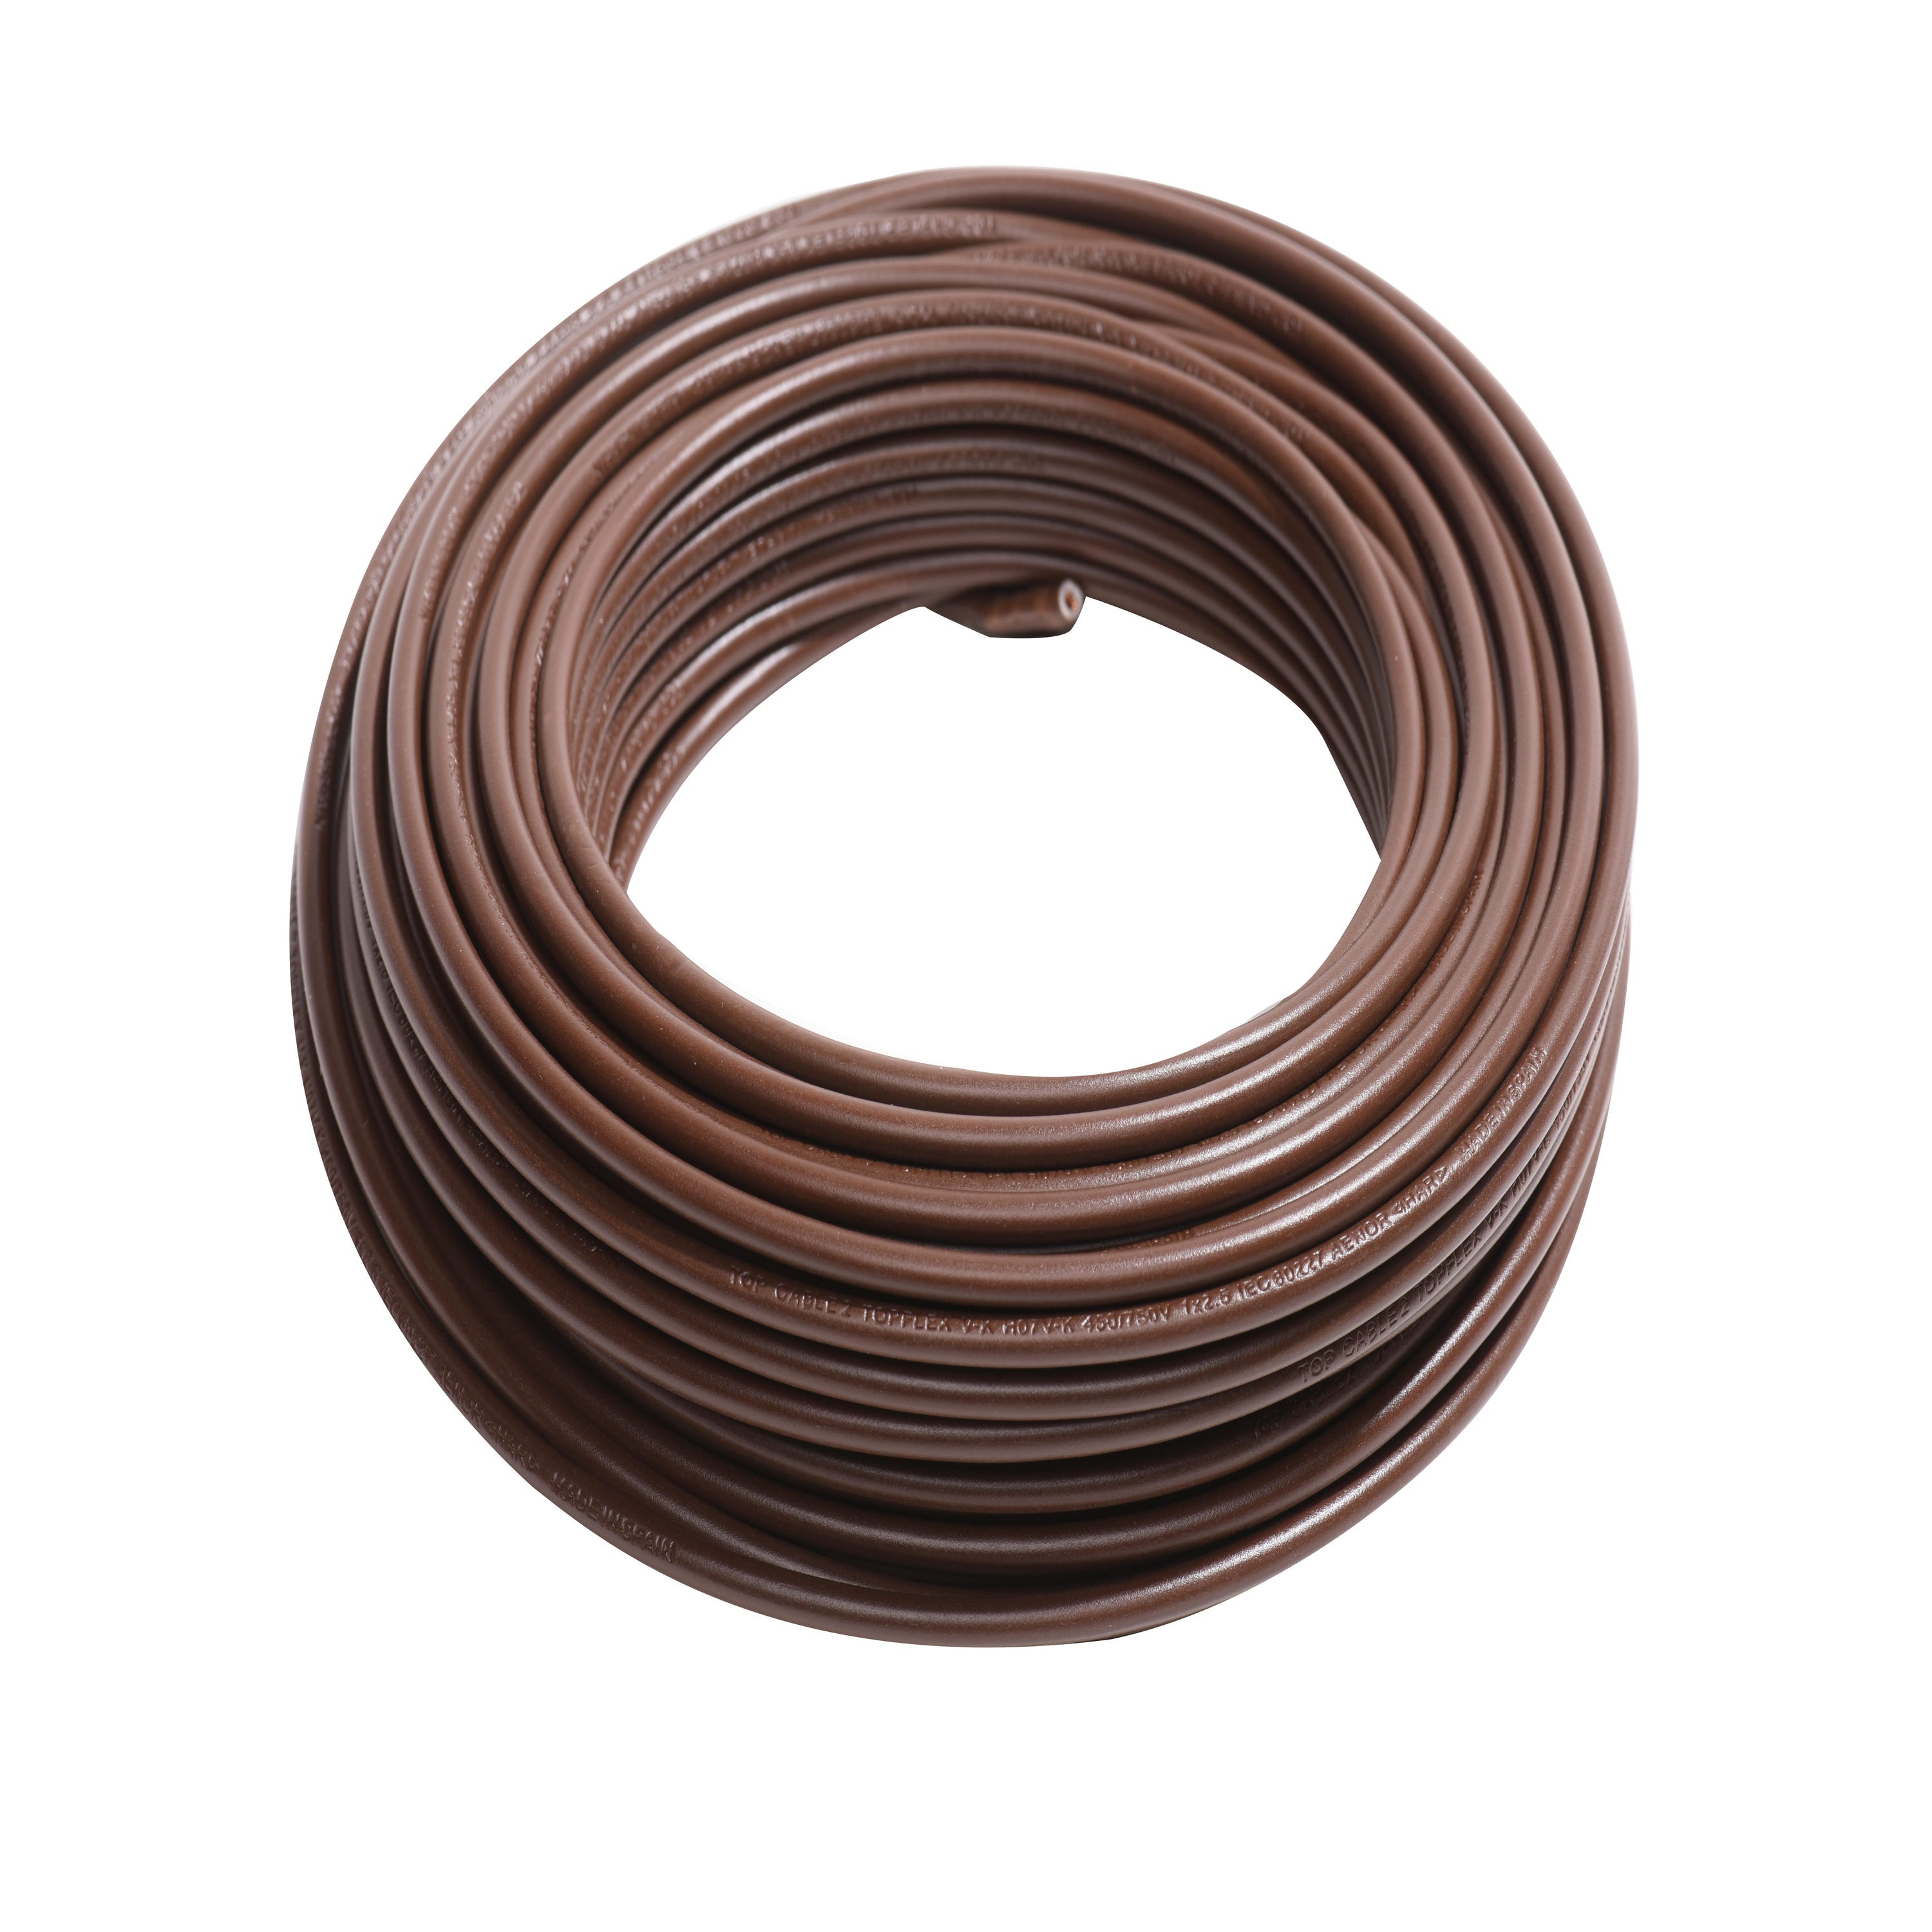 Cables de corriente gris y marrón - Forocoches